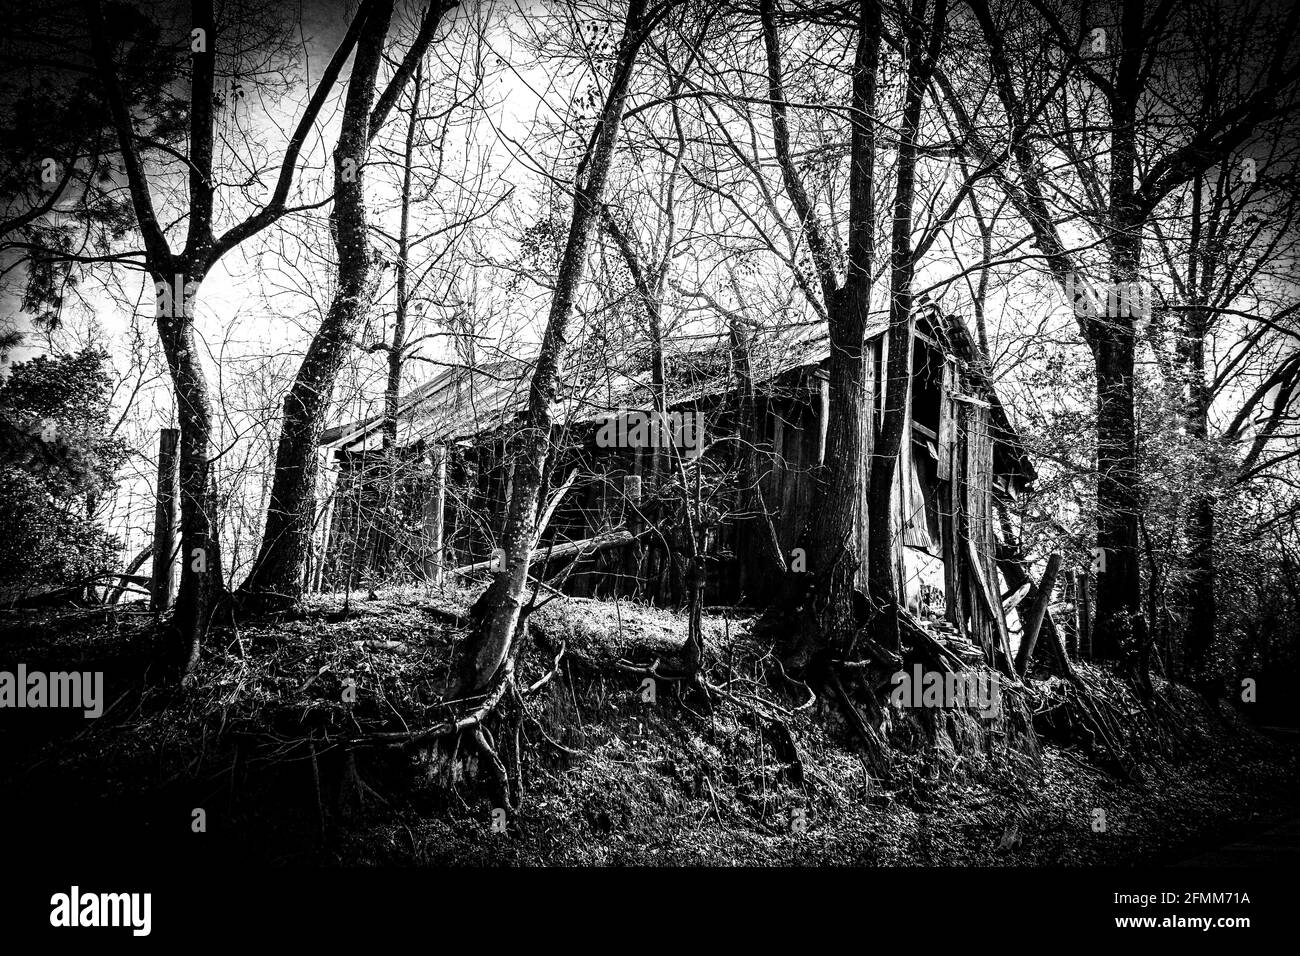 effet de filtre de vignette sur une grange sinistre de maison en détresse dans la forêt avec ajout noir et blanc photo à contraste élevé effet comme un jour férié d'halloween Banque D'Images